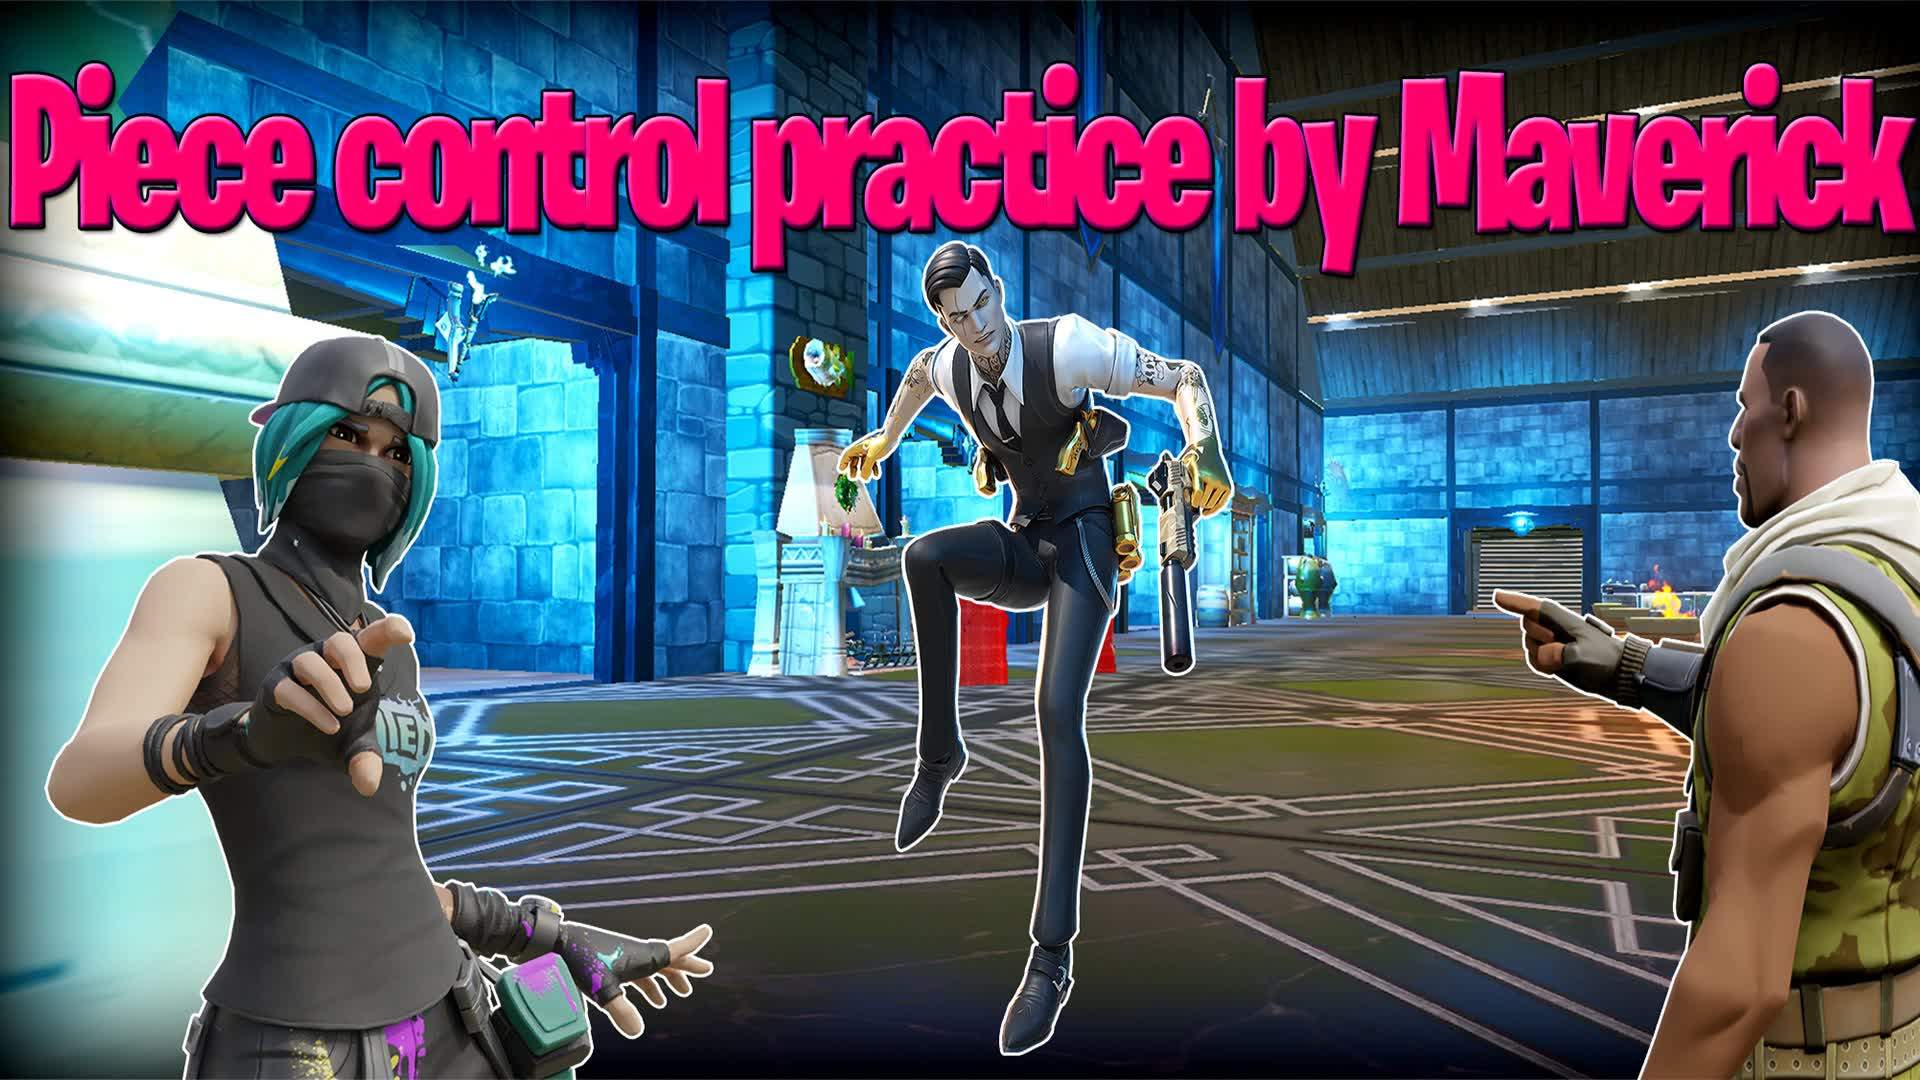 Piece control practice by Maverick